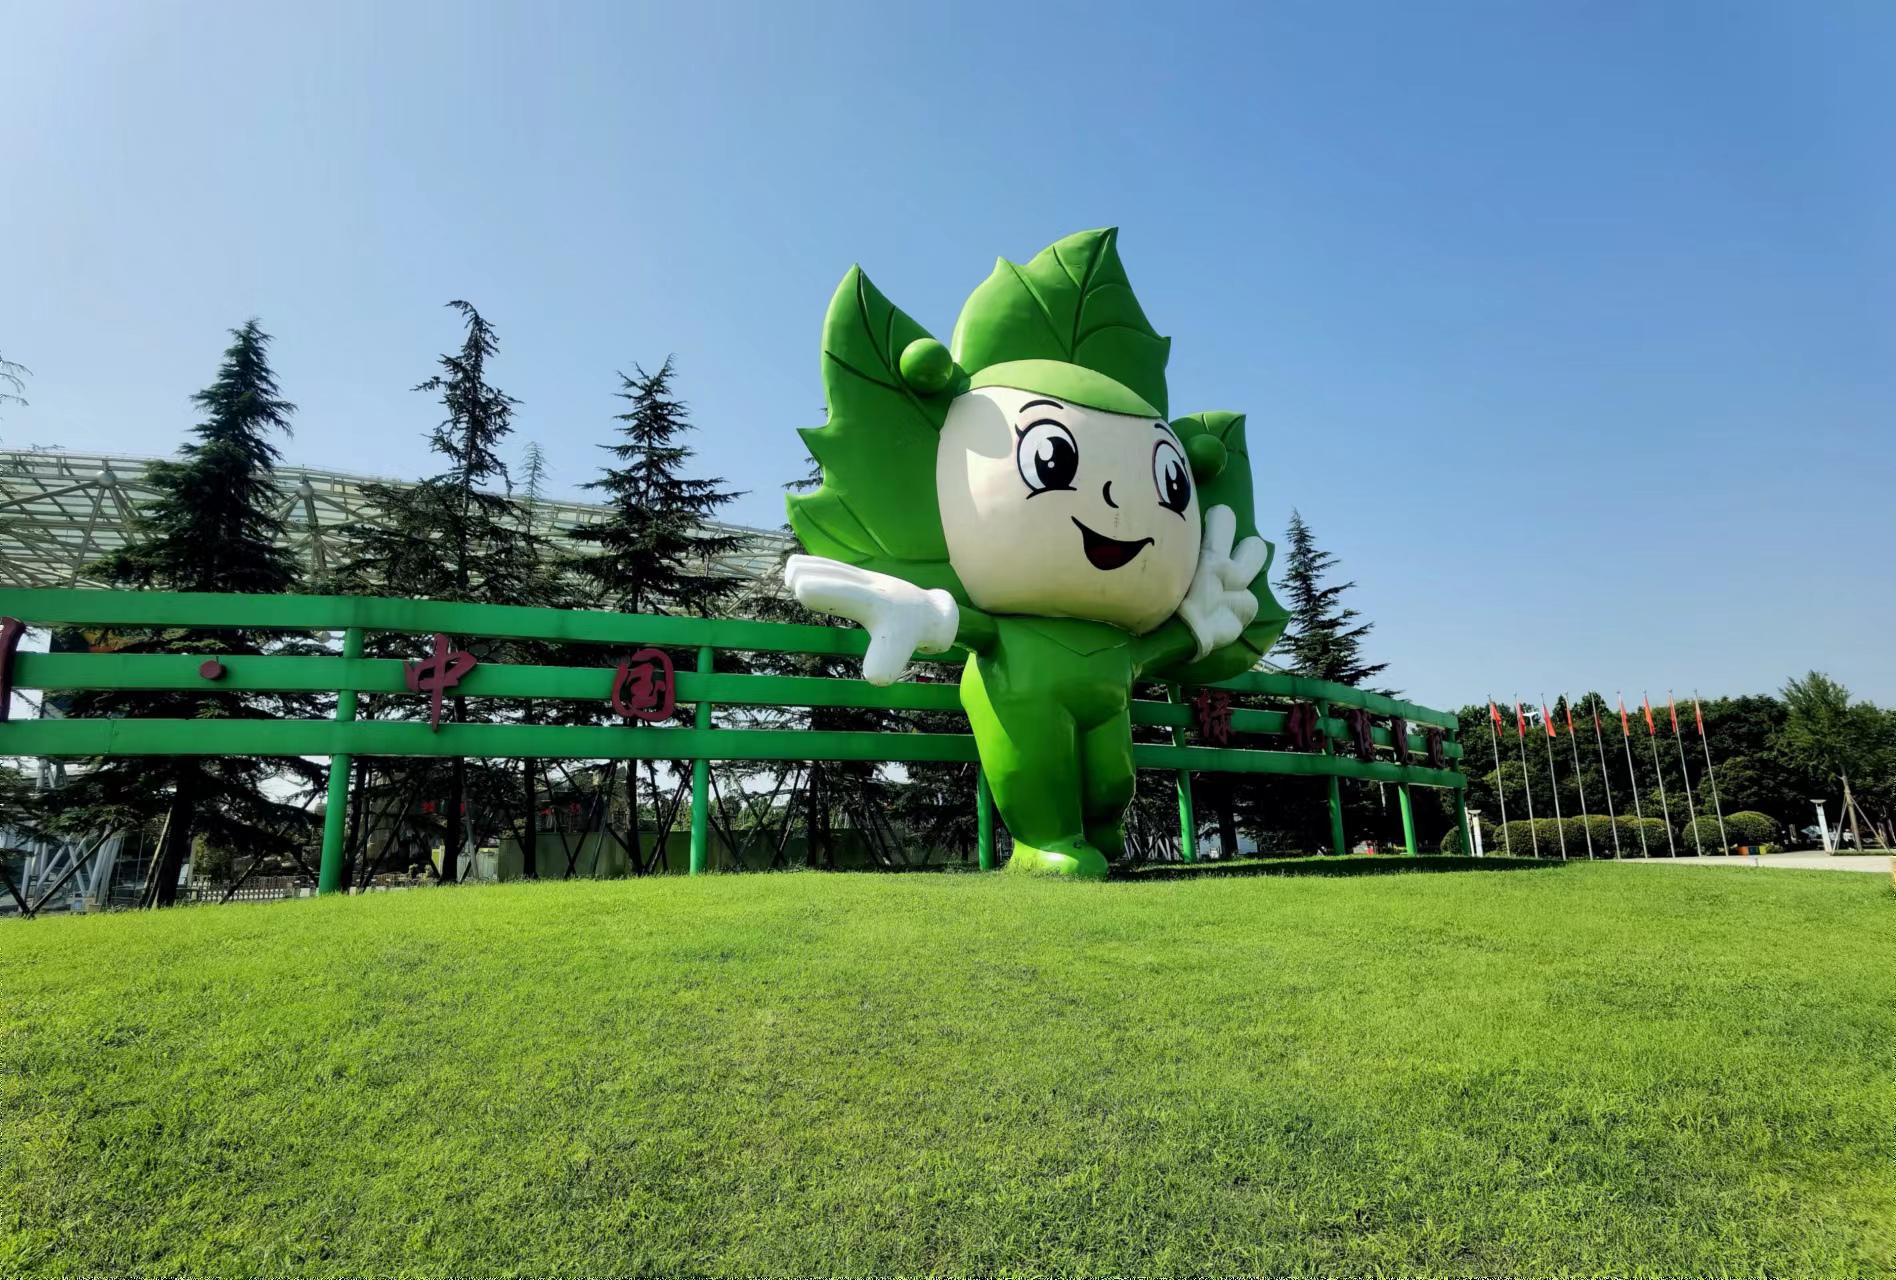 郑州绿博园游玩攻略 河南郑州·中国绿化博览园,简称郑州绿博园,位于